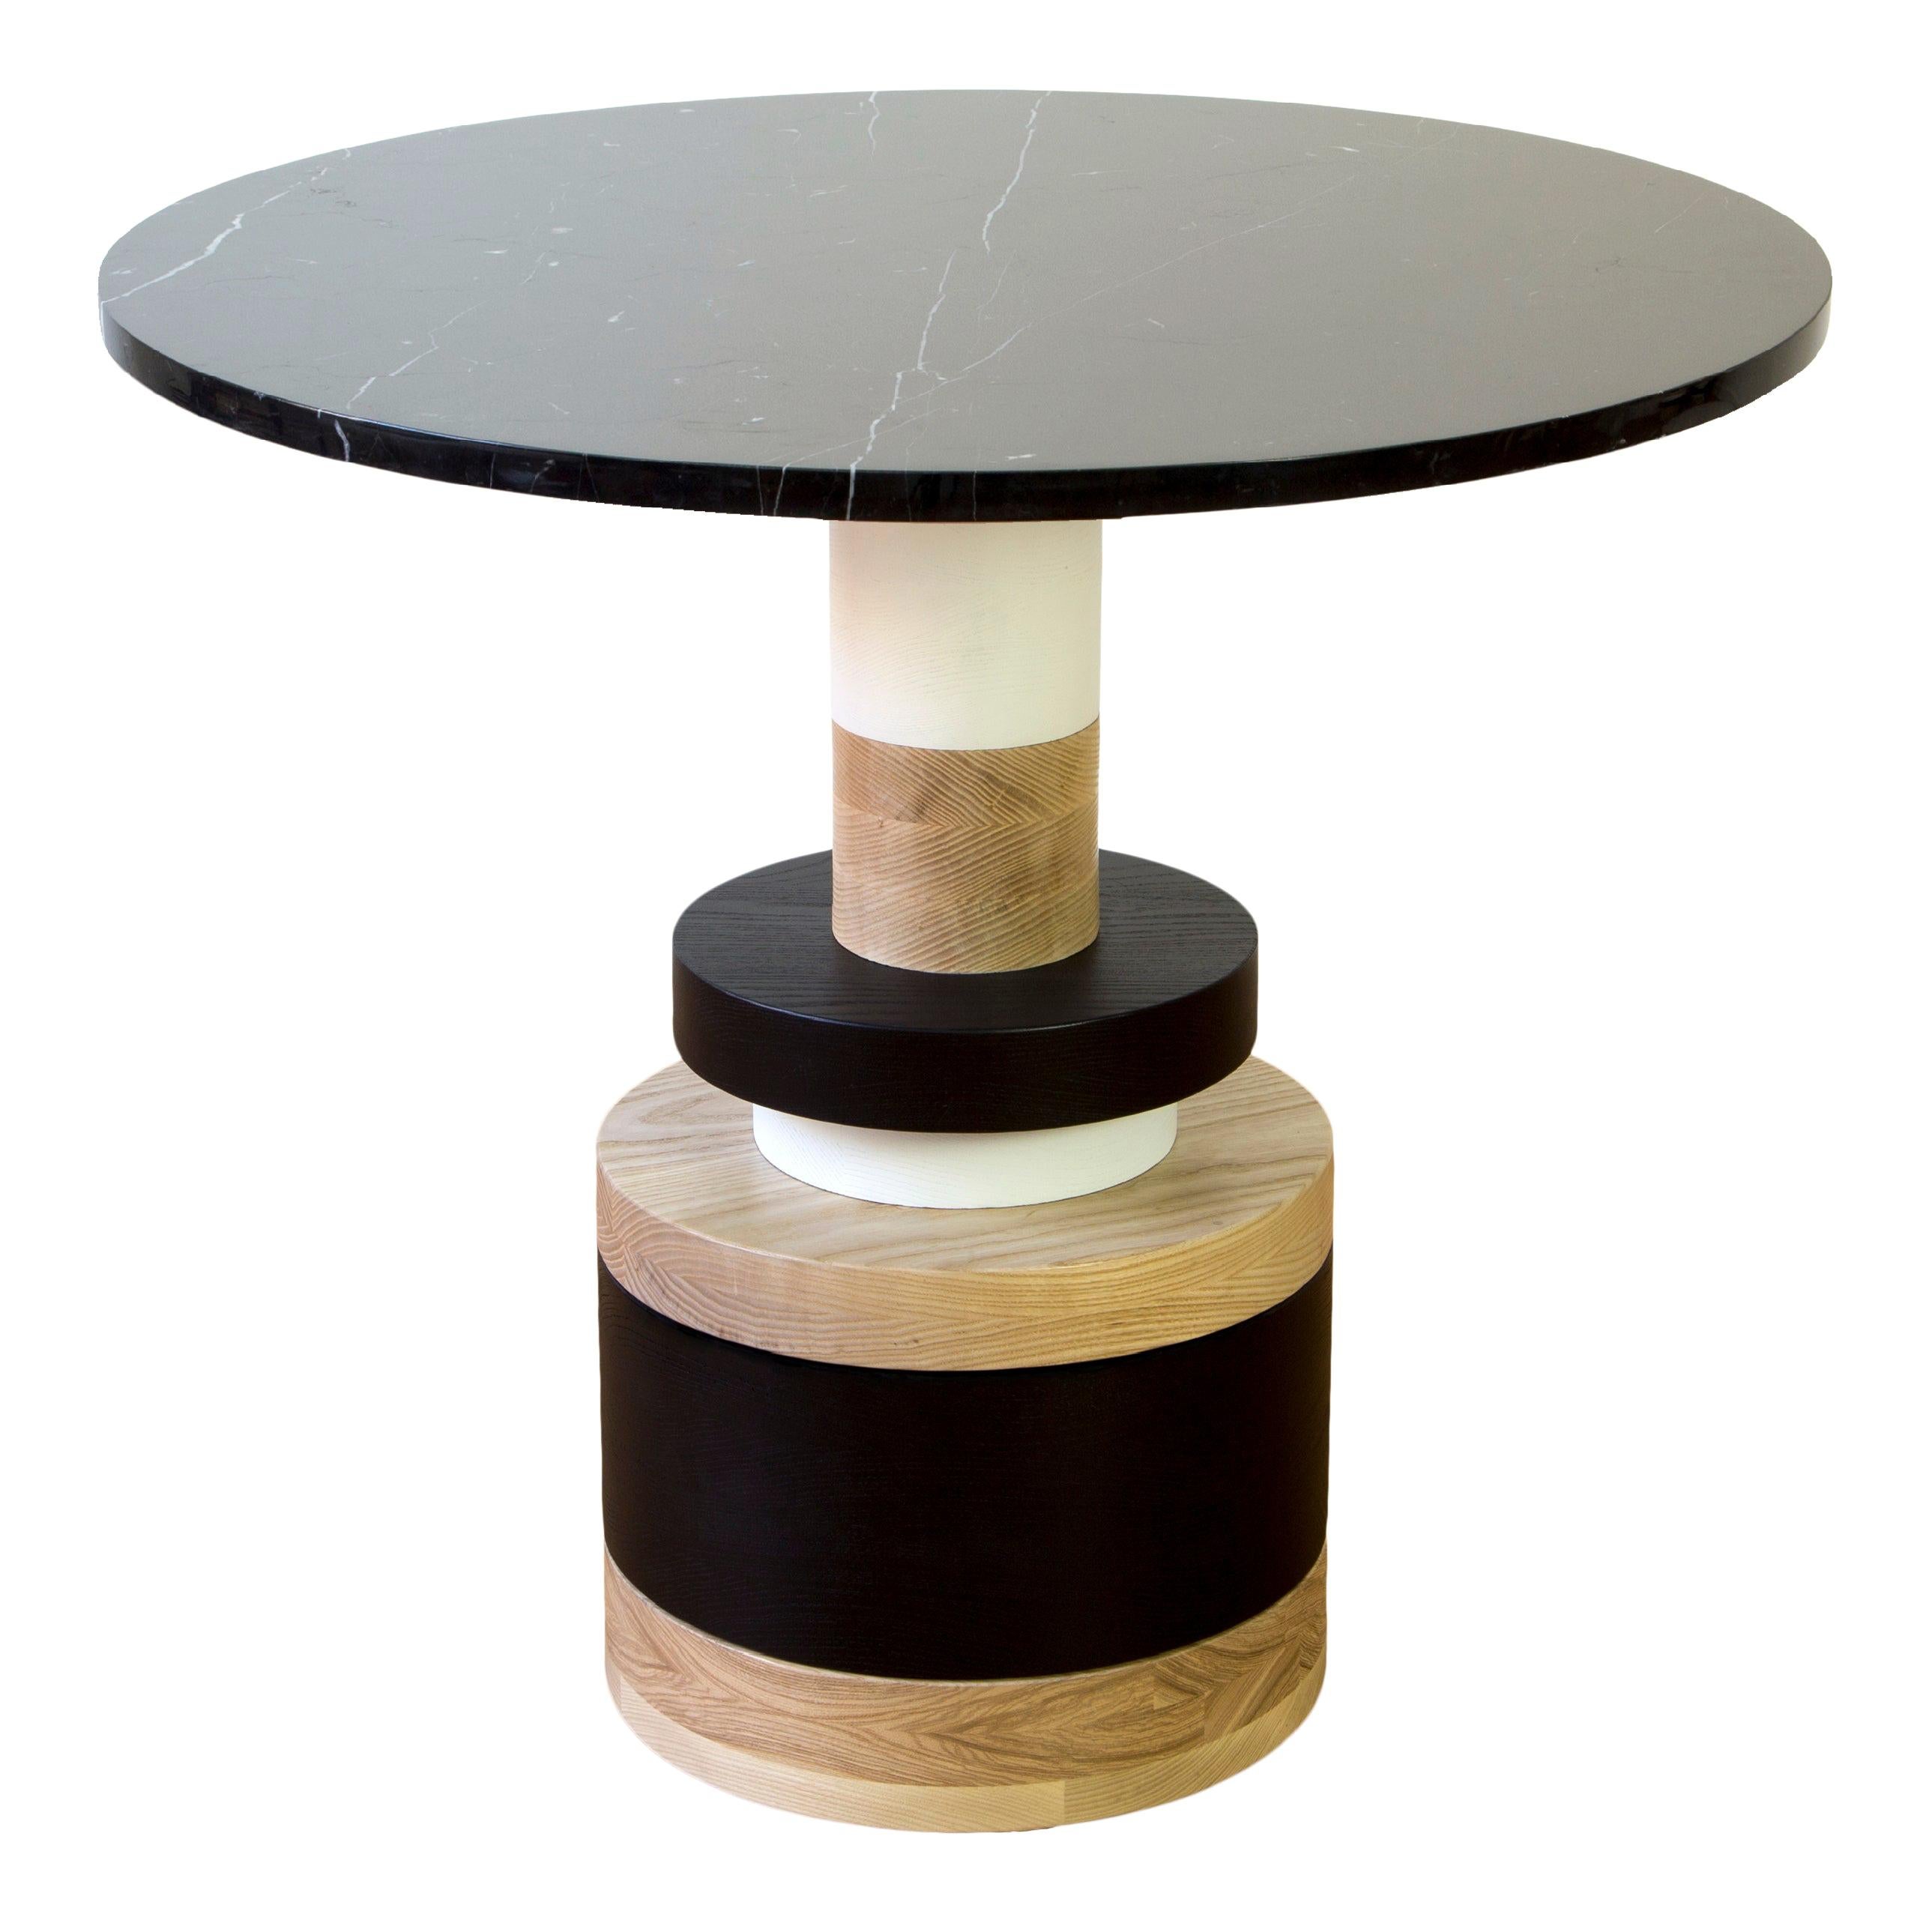 Table basse Sass de Souda, petite, avec plateau en marbre noir, fabriquée sur commande